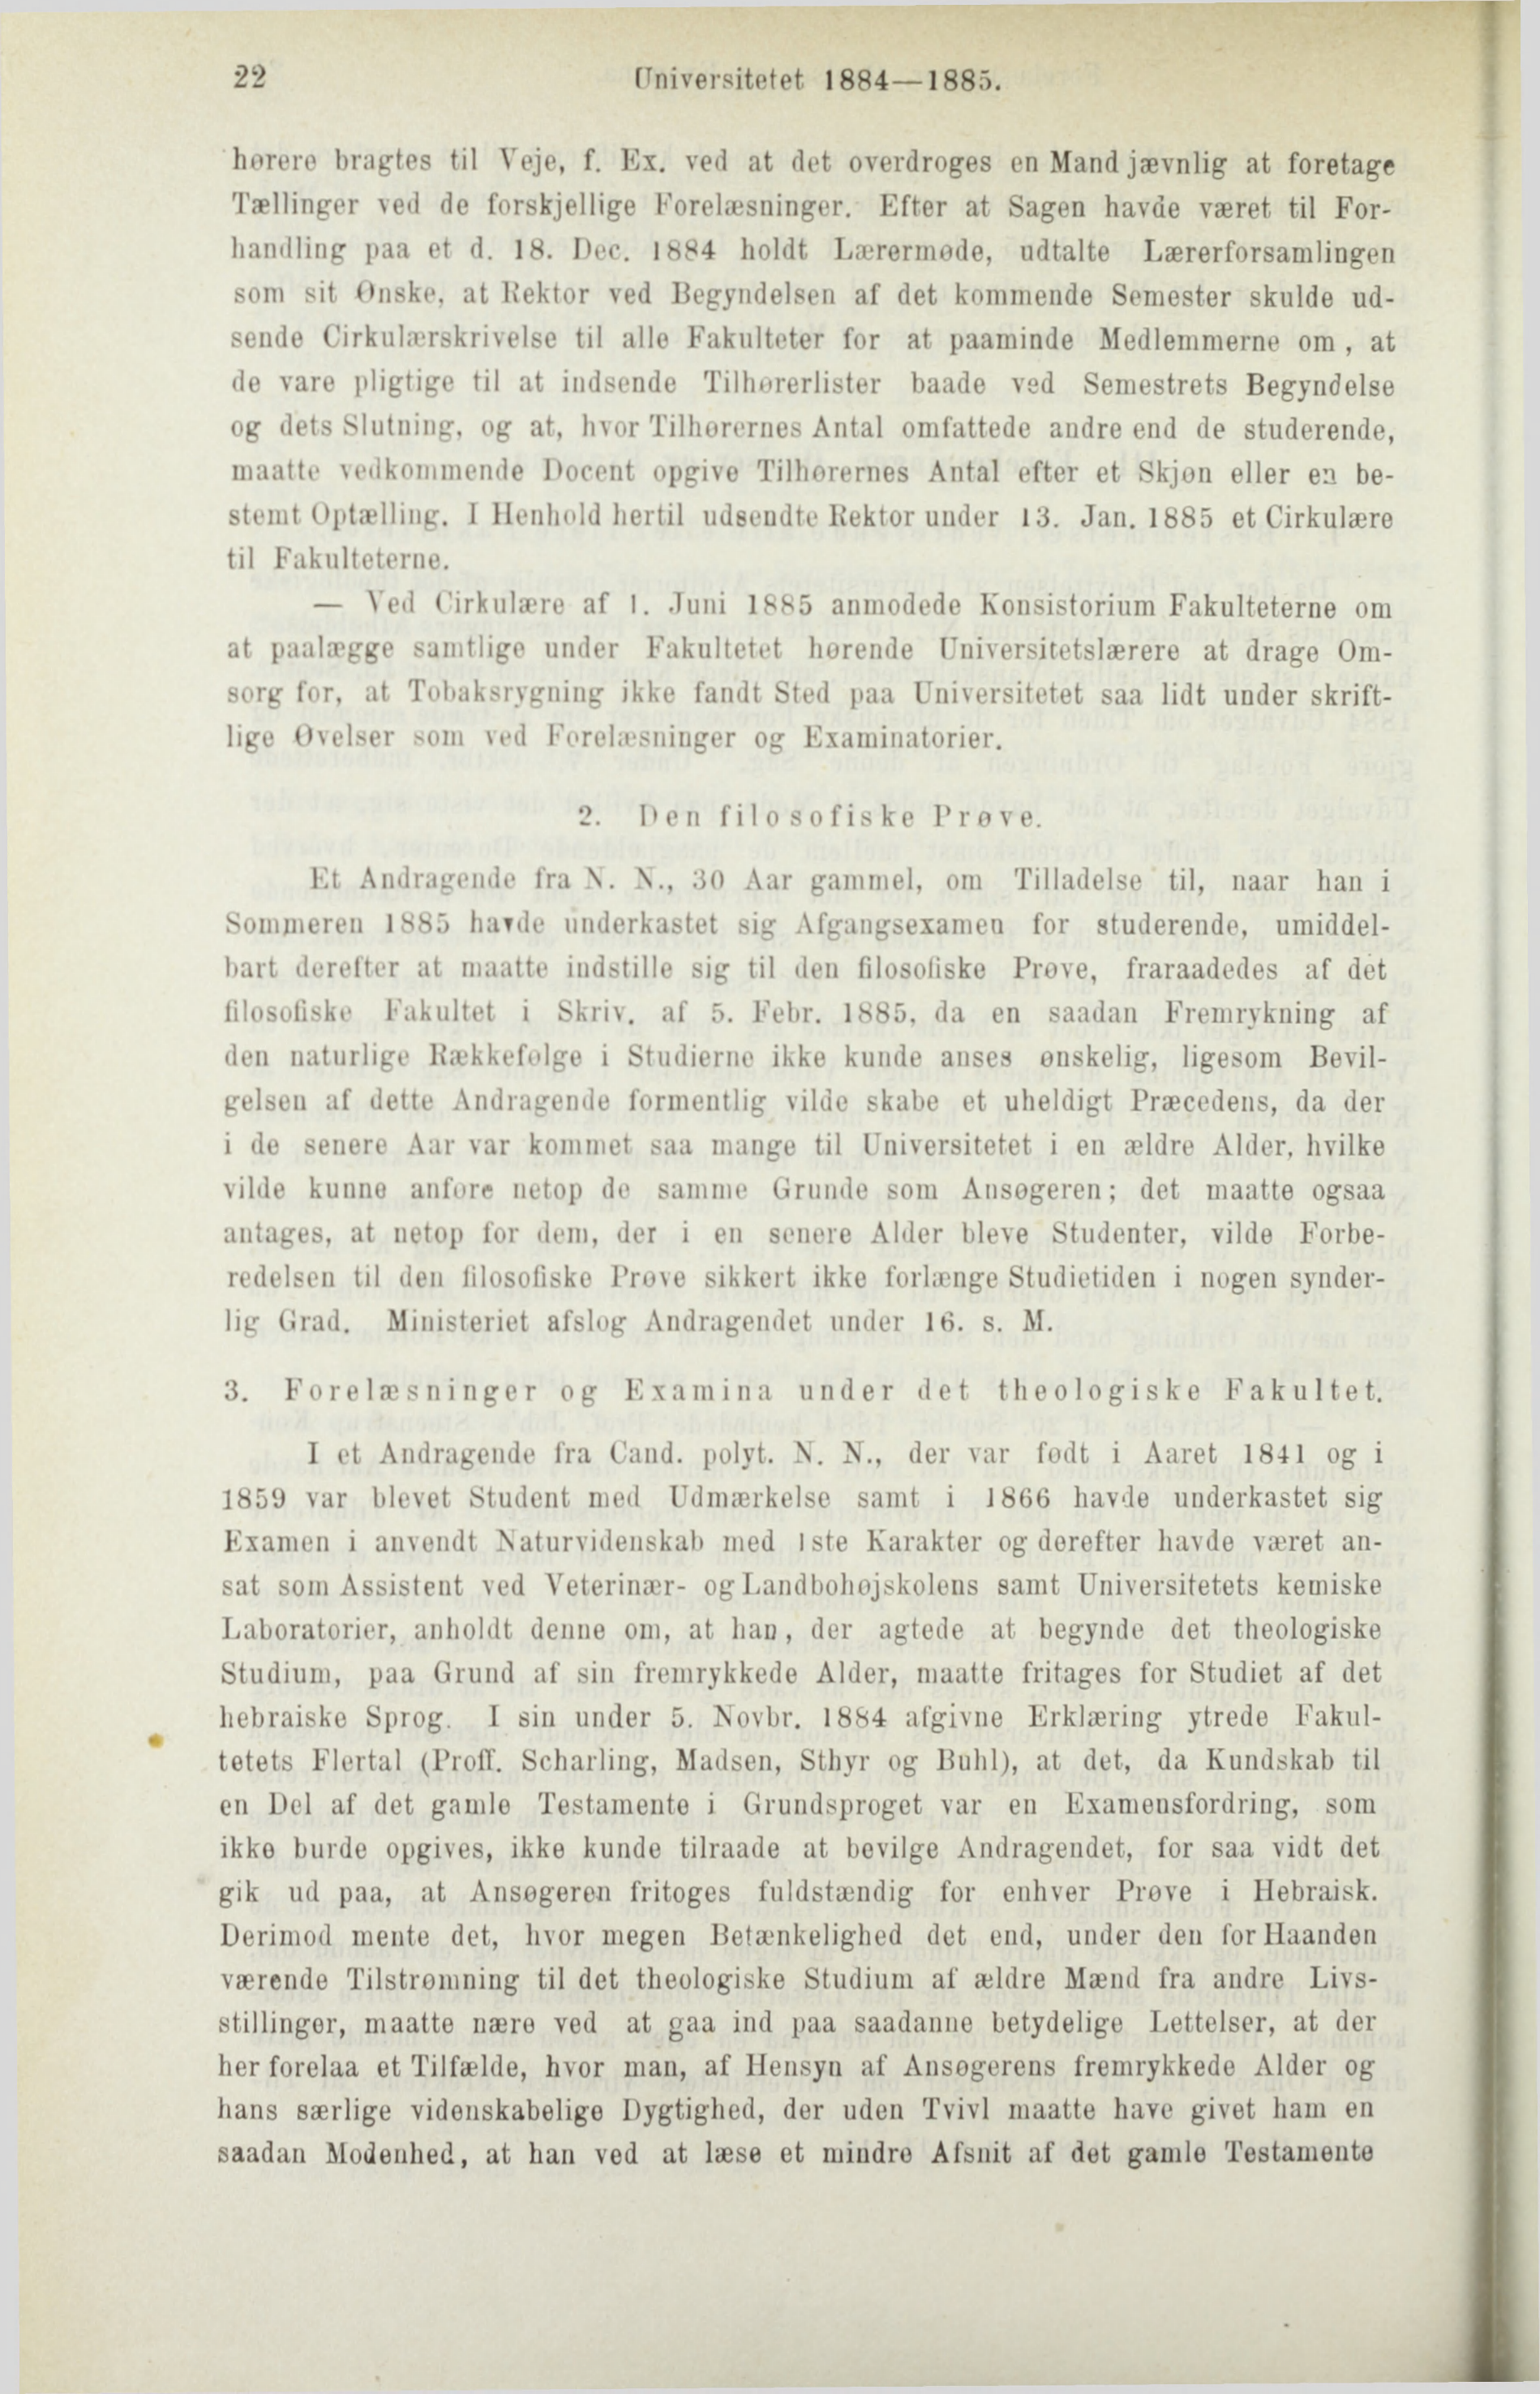 22 [Universitetet 1884 1885. horere bragtes til Veje, f. Ex. ved at det overdroges en Mand jævnlig at foretage Tællinger ved de forskjellige Forelæsninger.